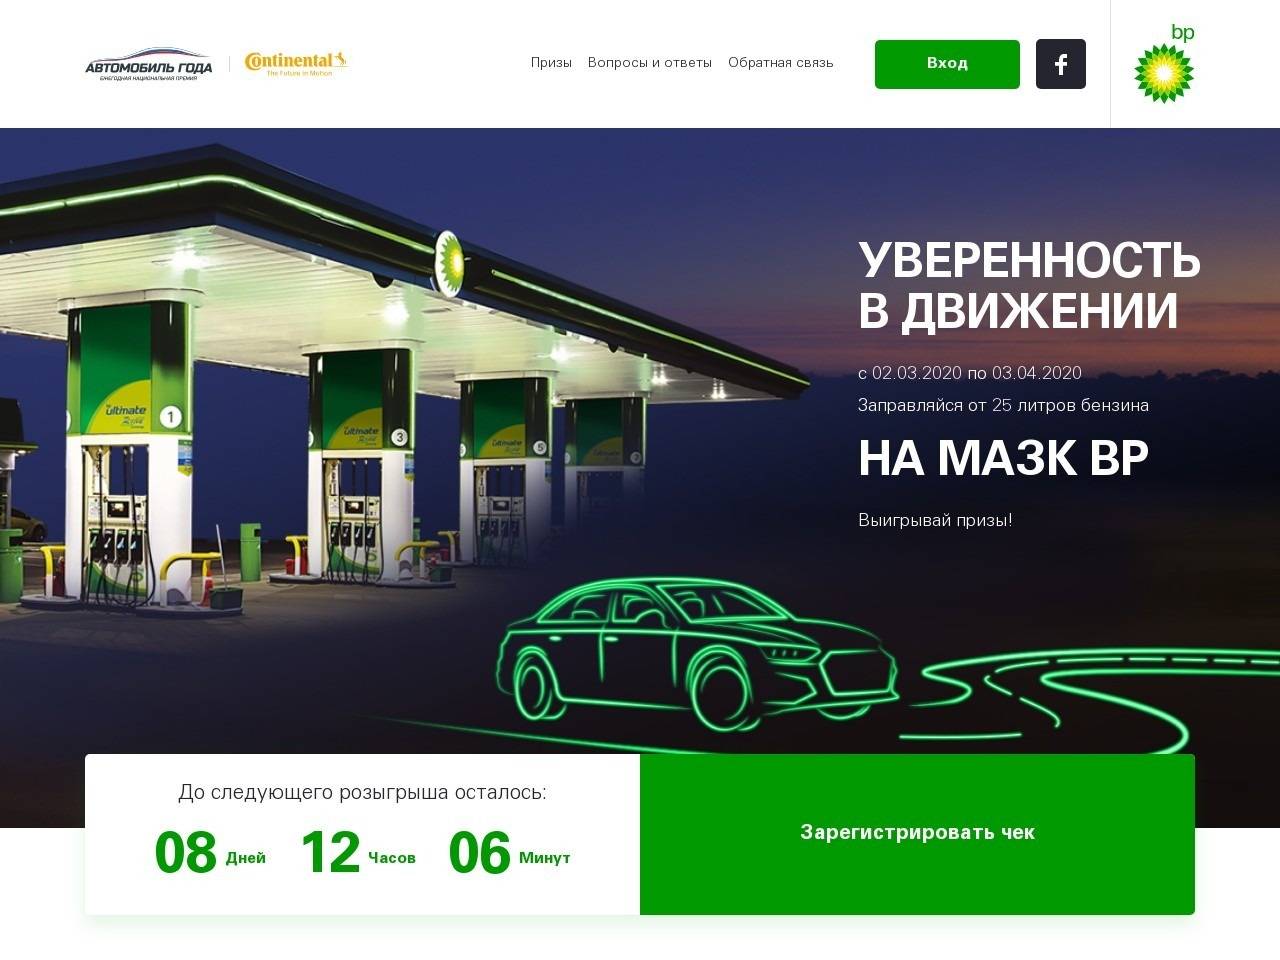 bp.autogoda.ru зарегистрировать чек